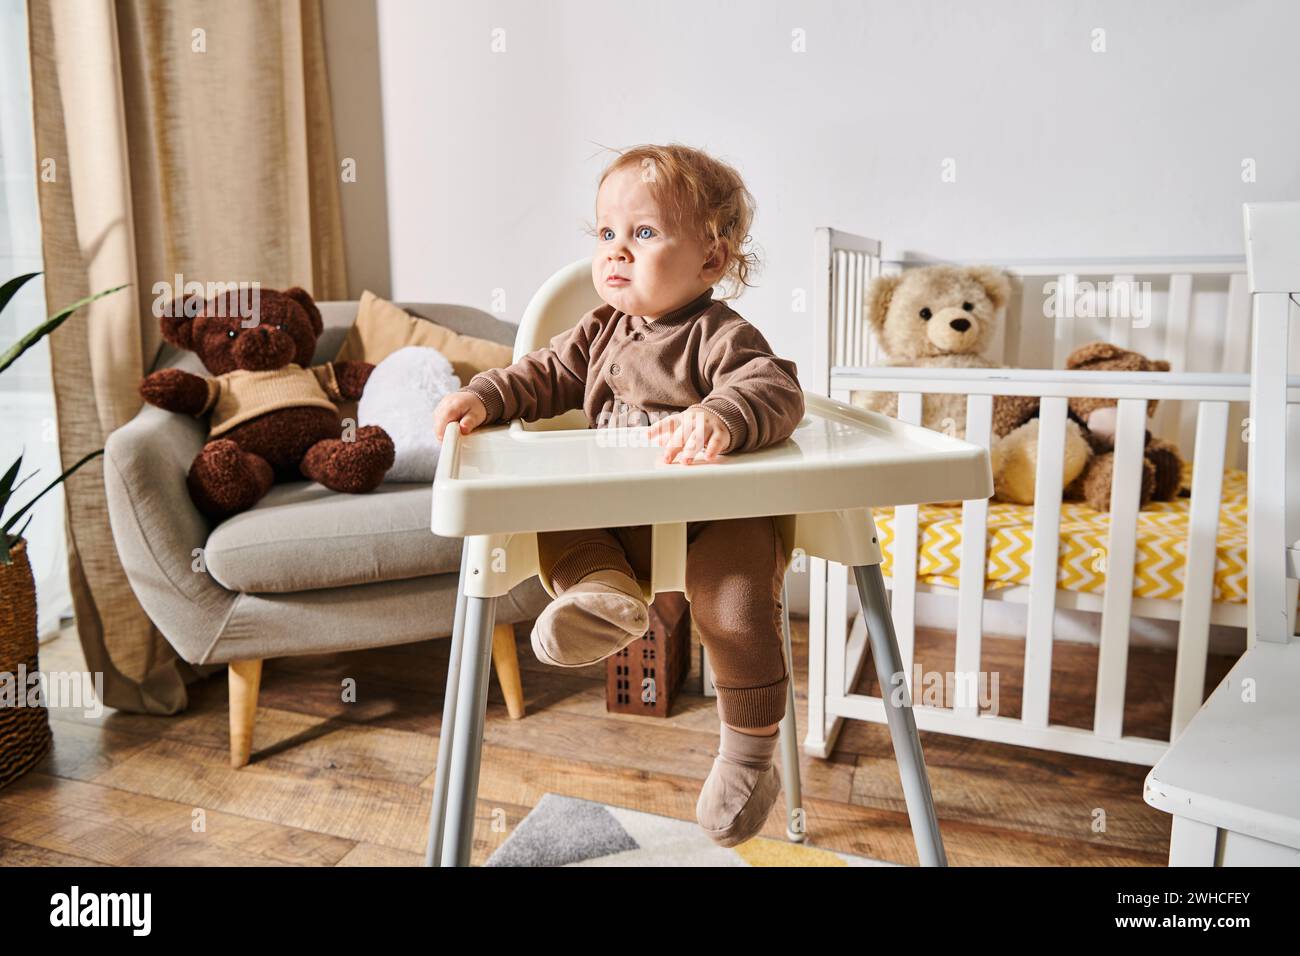 Kleiner Junge sitzt im Kinderstuhl und blickt weg in einem gemütlichen Kinderzimmer mit Kinderbett und Teddybären Stockfoto